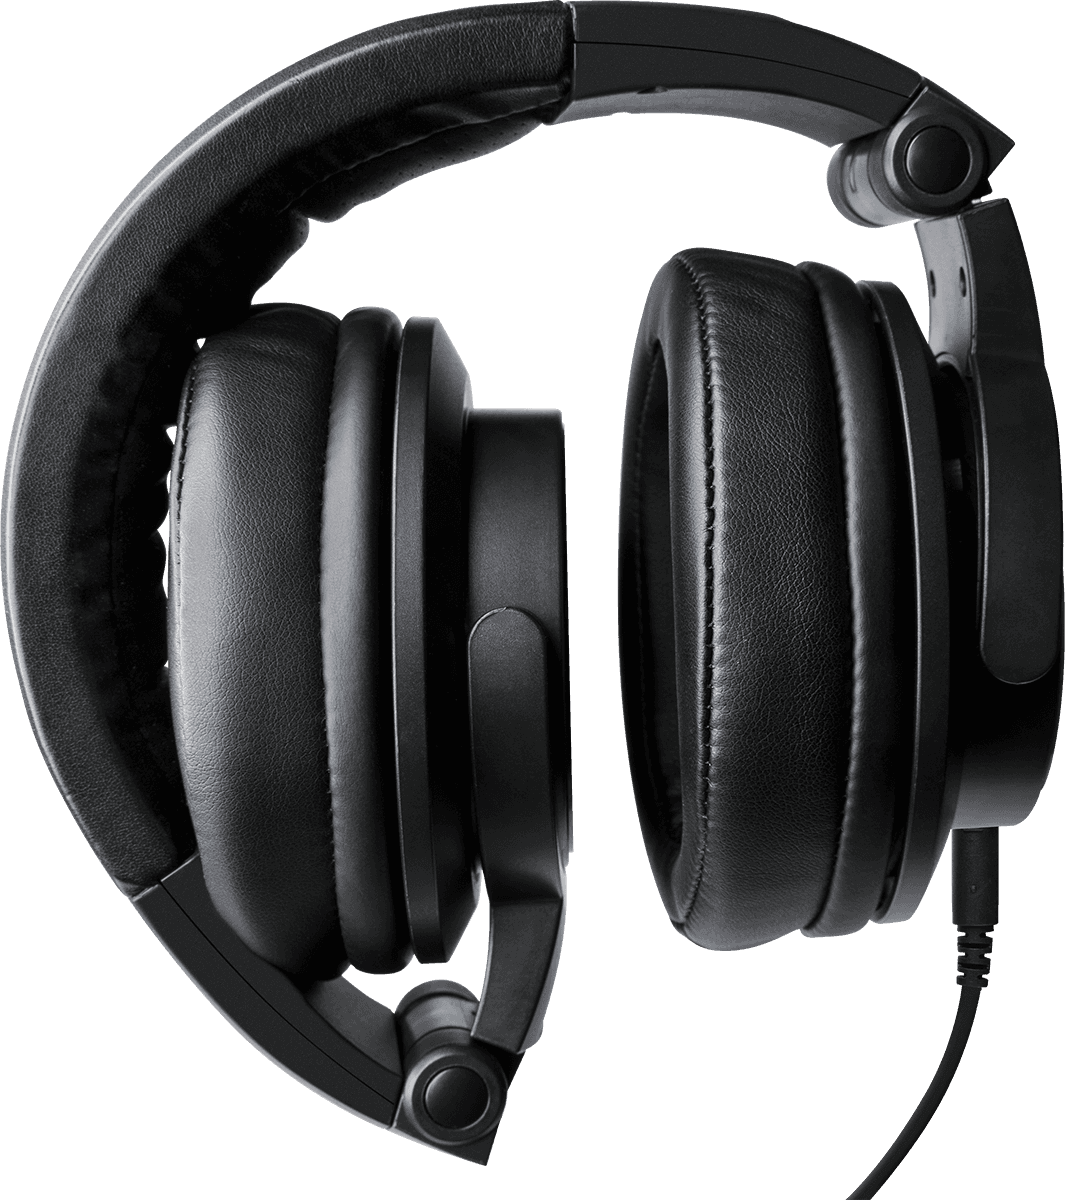 Mackie Mc 250 - Closed headset - Variation 2